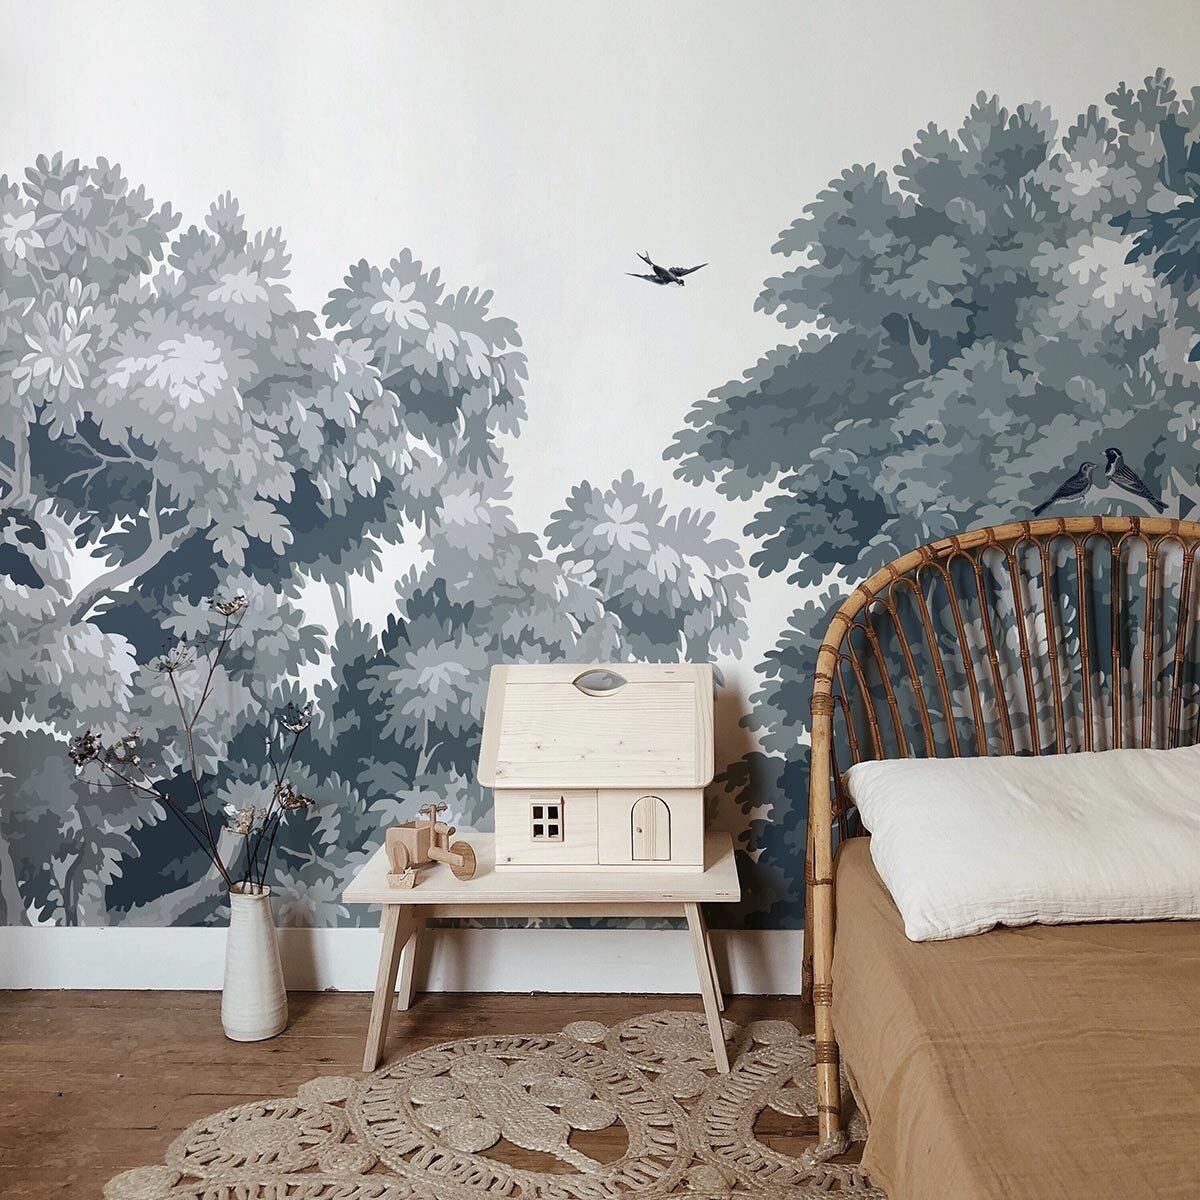 papierpeint-fresque-panoramique-foret-panneau-dream-forest-les-dominotiers-2.jpg